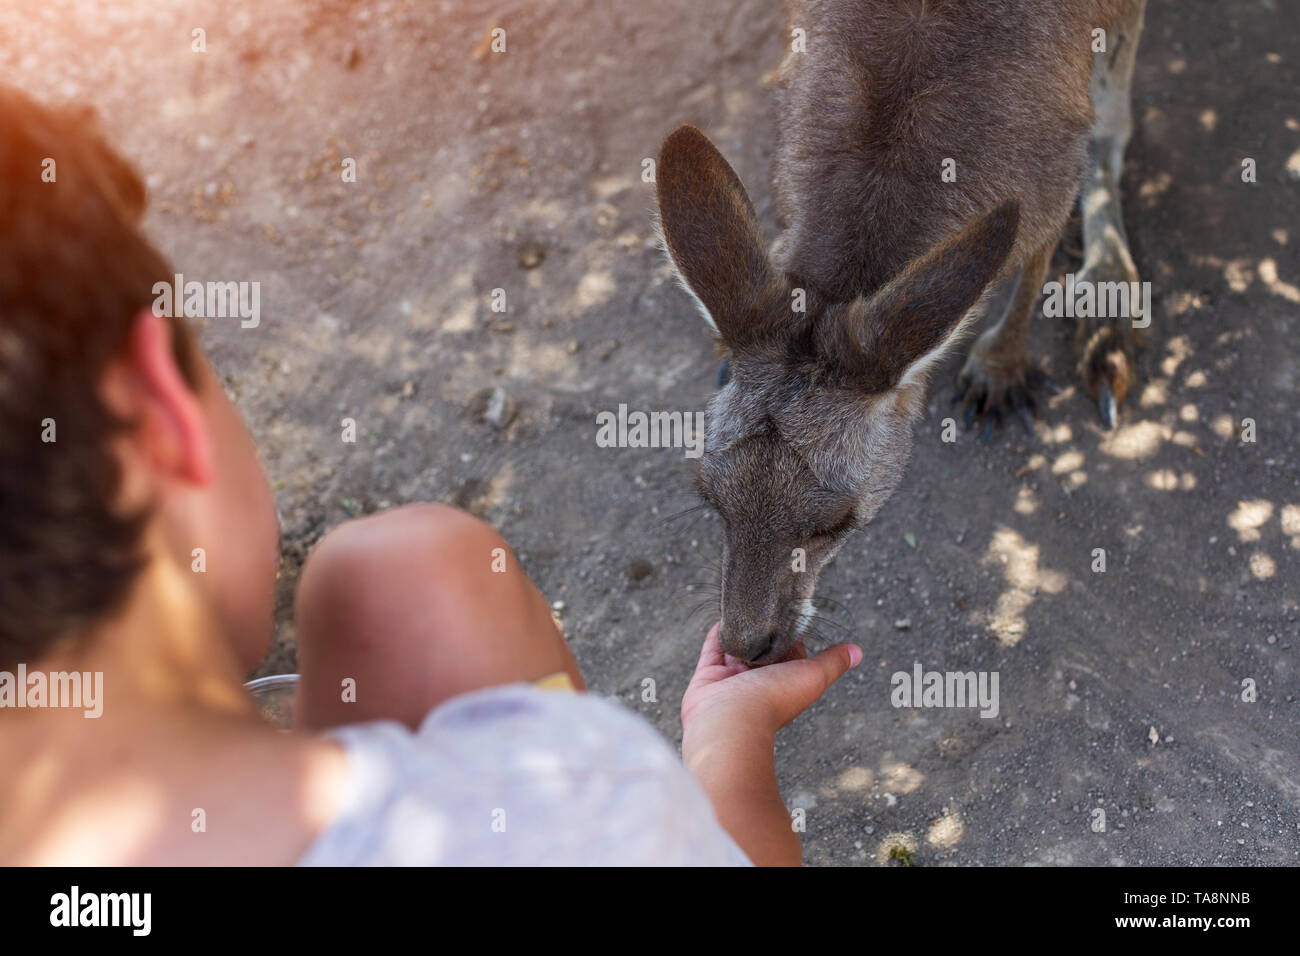 Les personnes en interaction avec un kangaroo à israélien zoo Banque D'Images